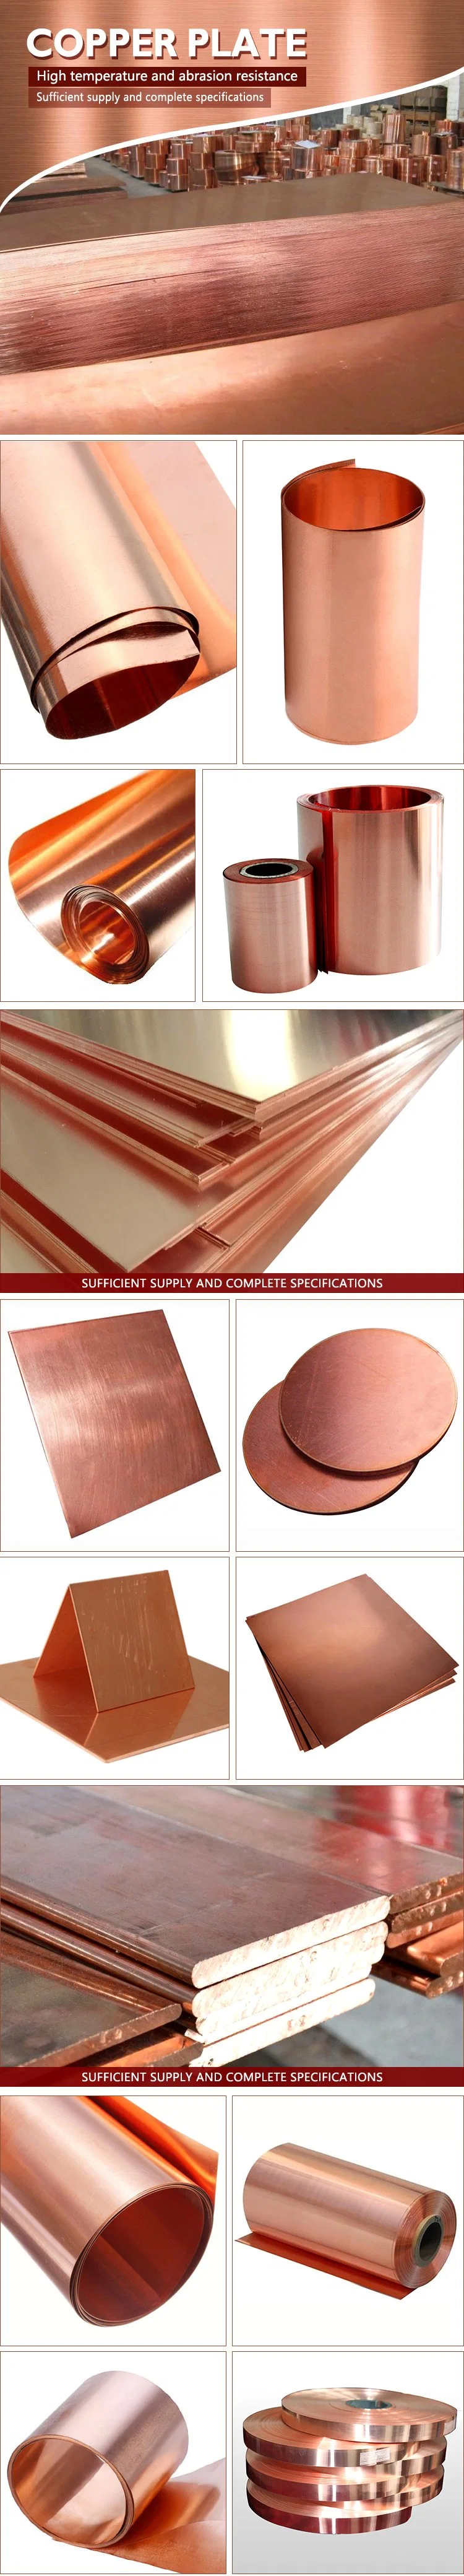 Cucrzr Chromium Zirconium Copper Sheet Plate Price